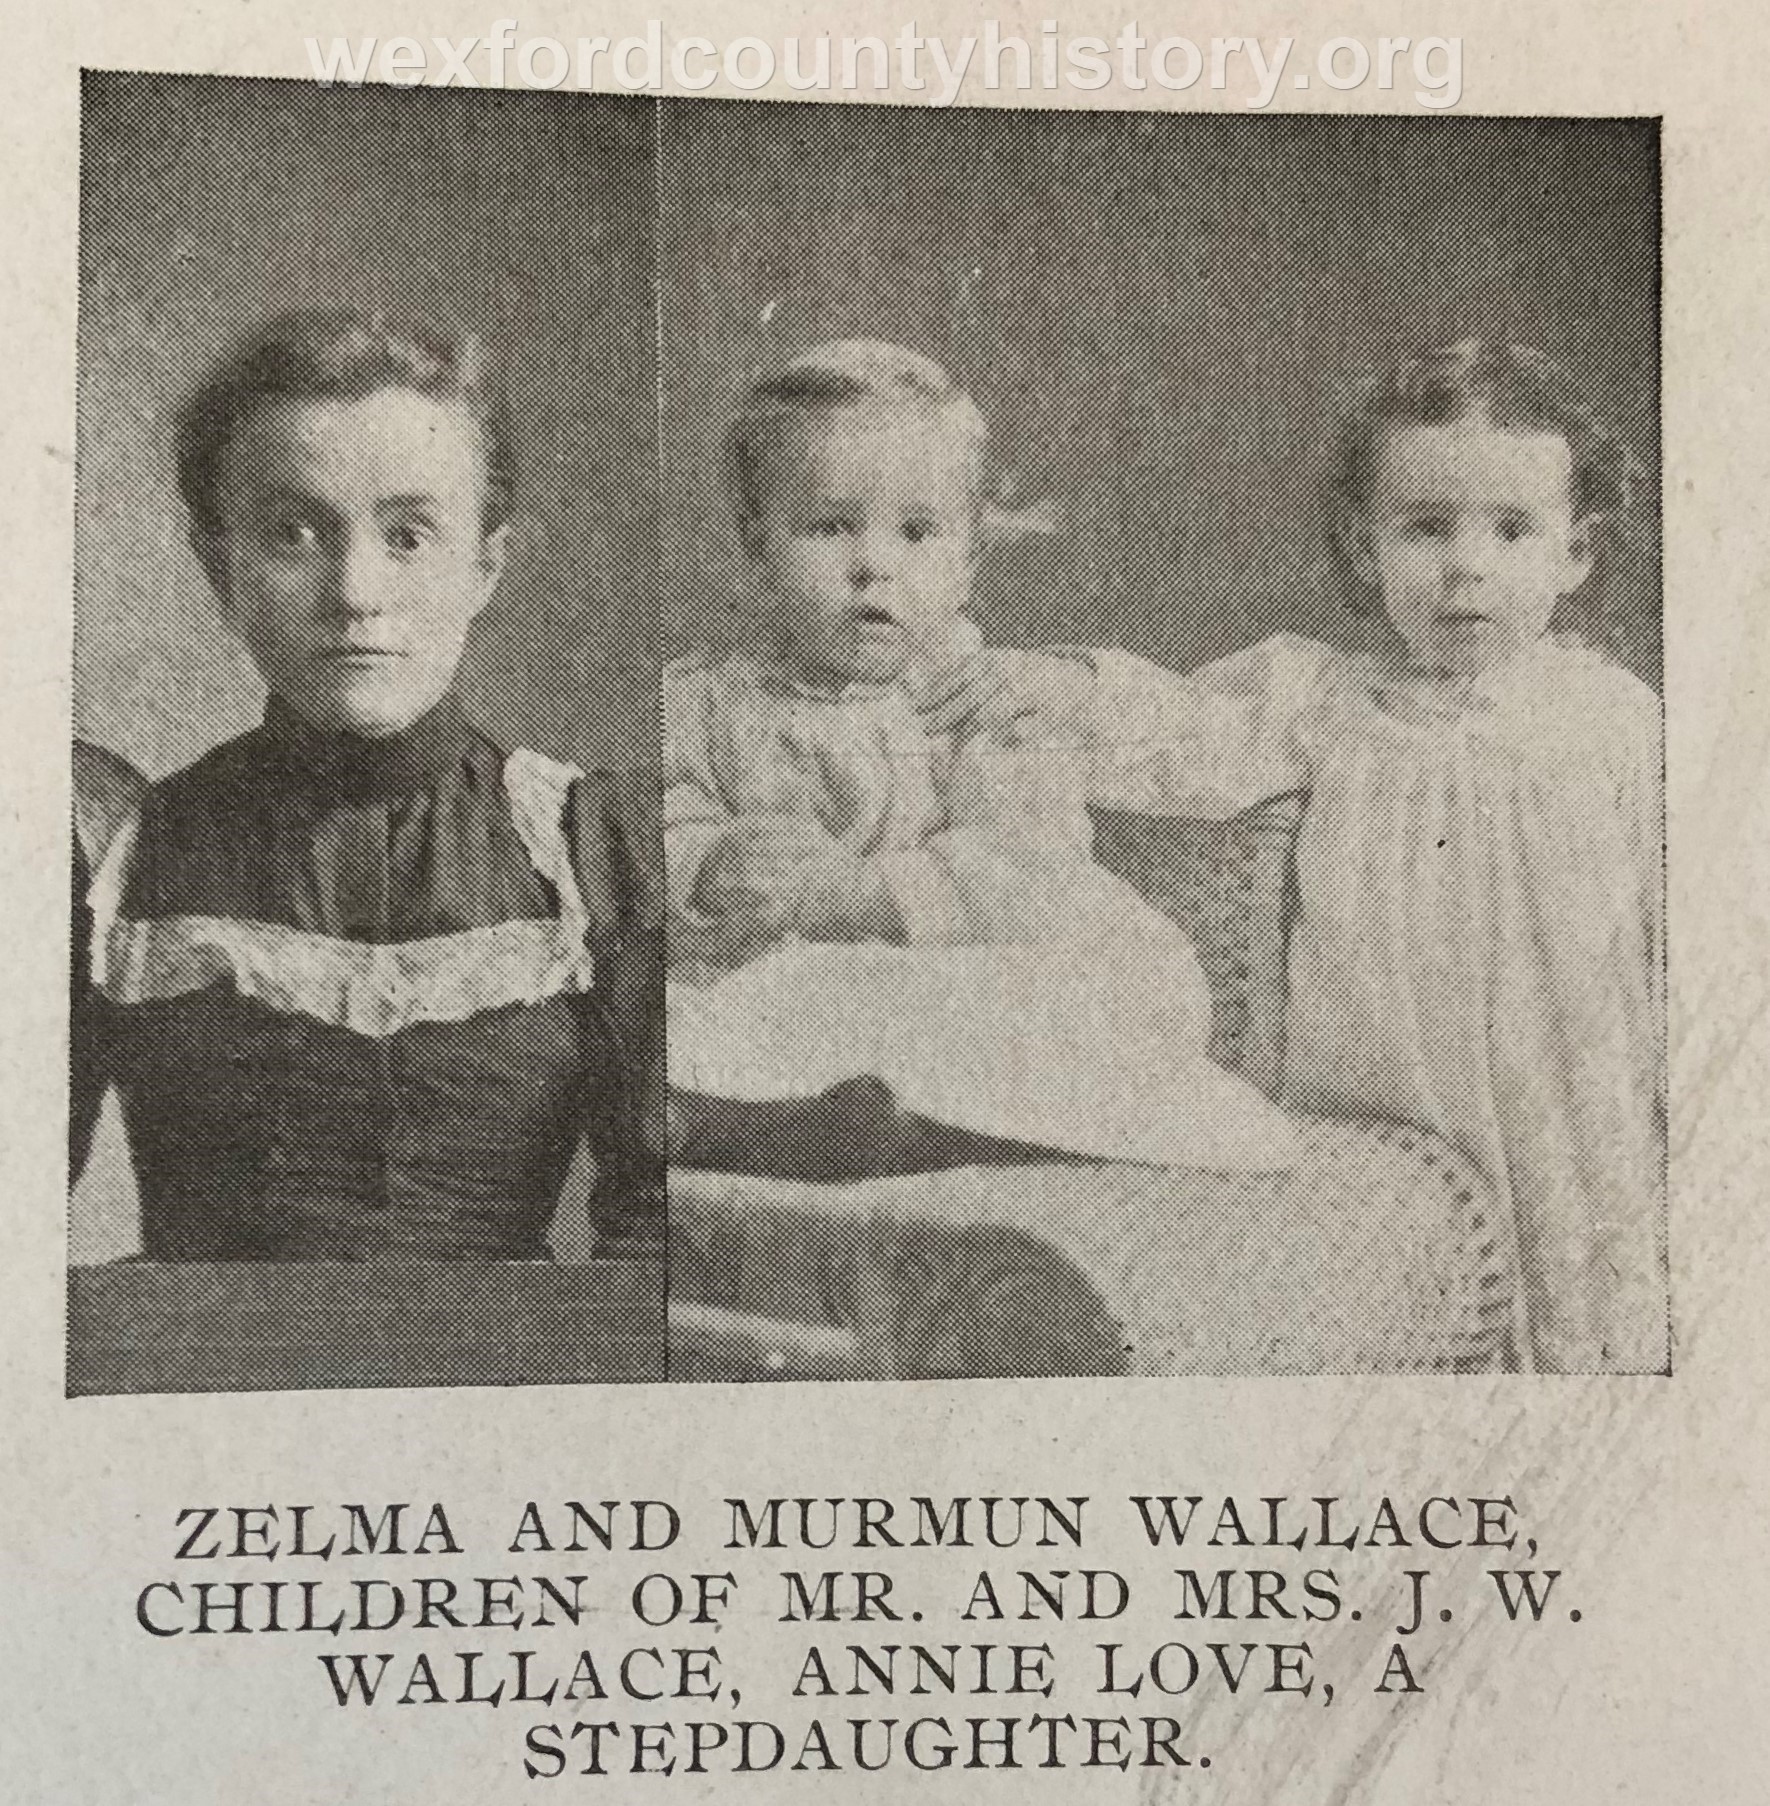 Zelma and Murman Wallace